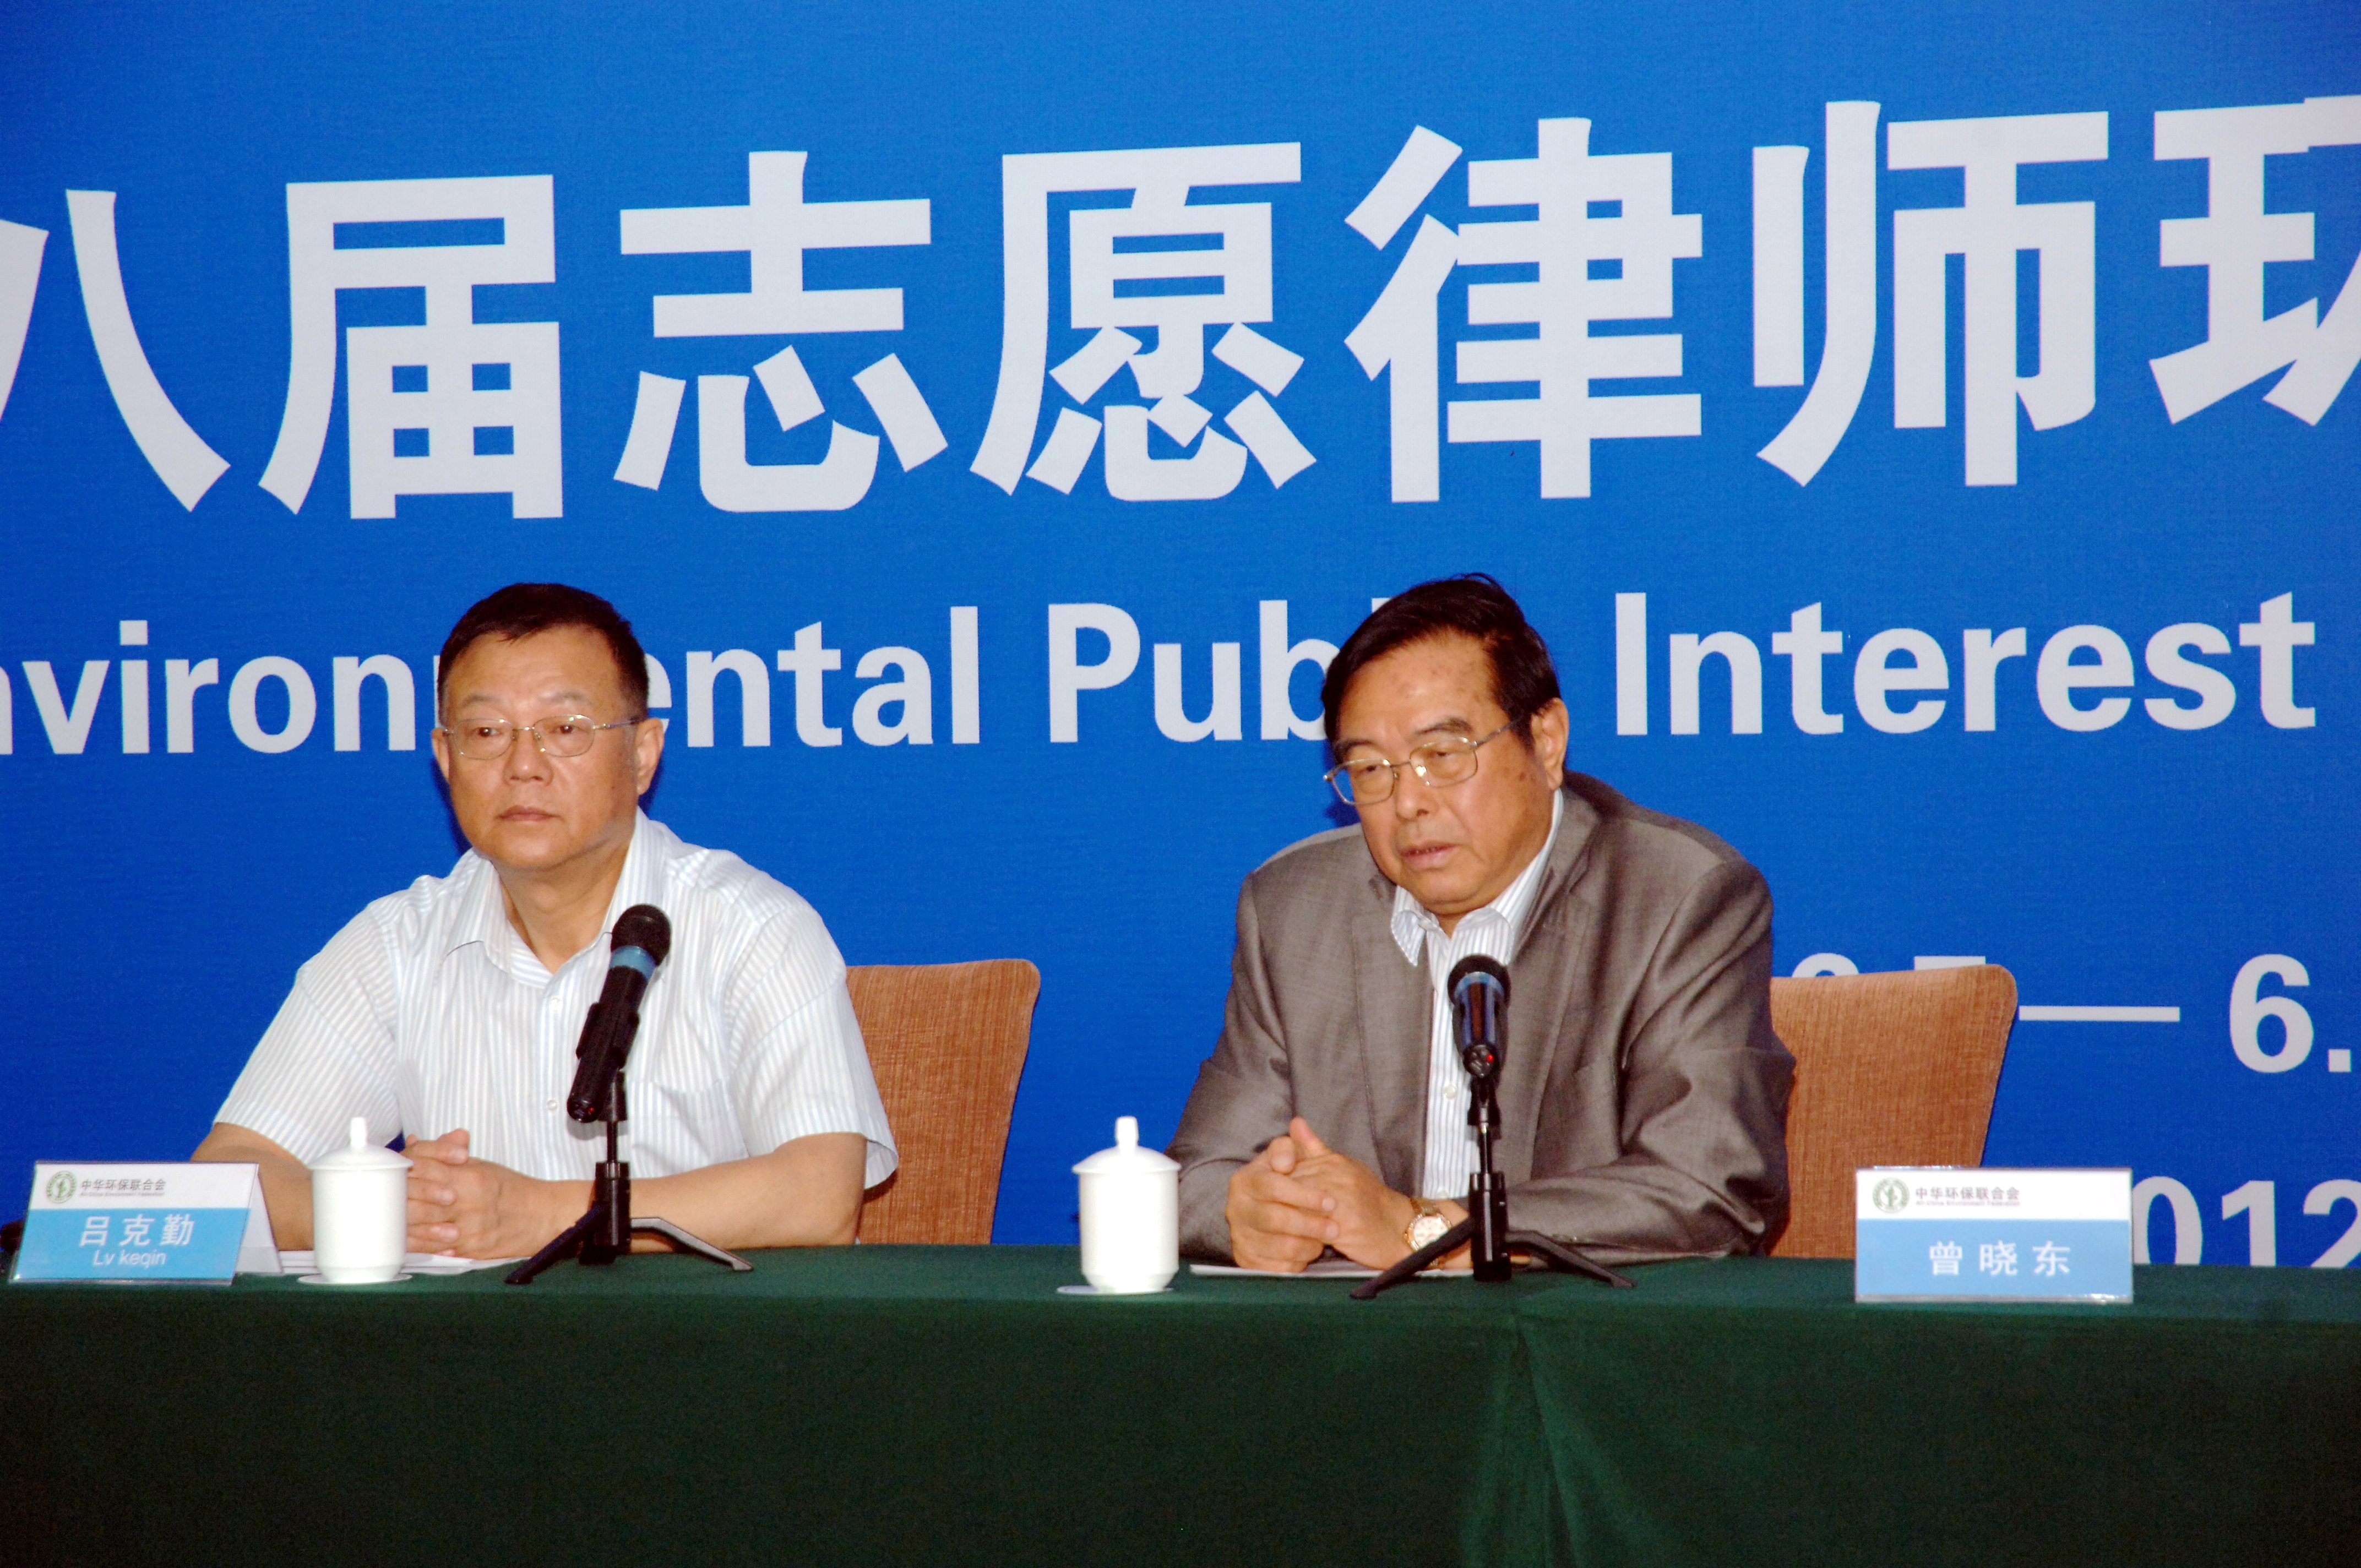 刘春雷所被中华环保联合会确定为环境维权